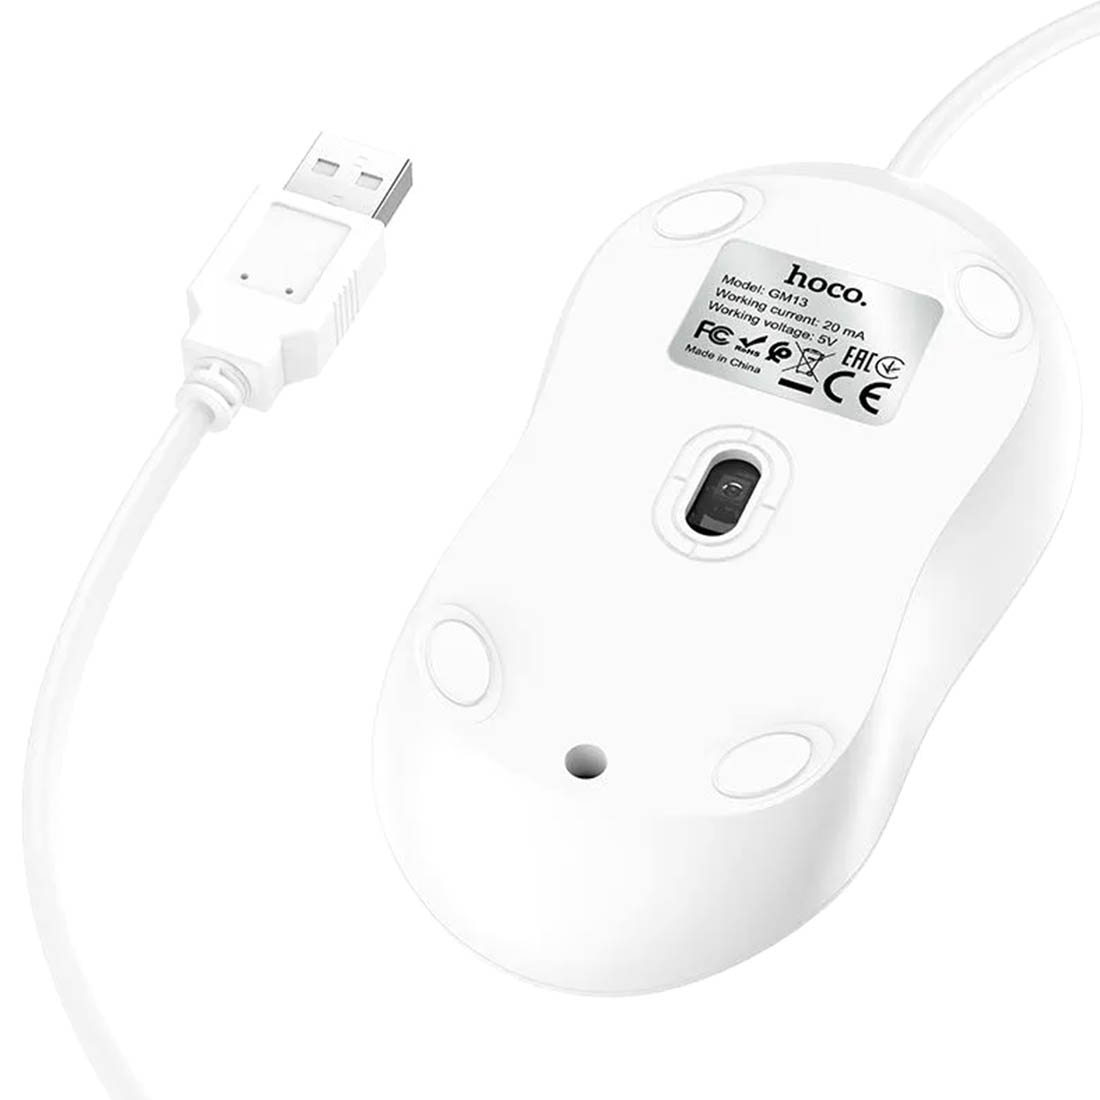 Компьютерная мышь HOCO GM13, проводная, цвет белый